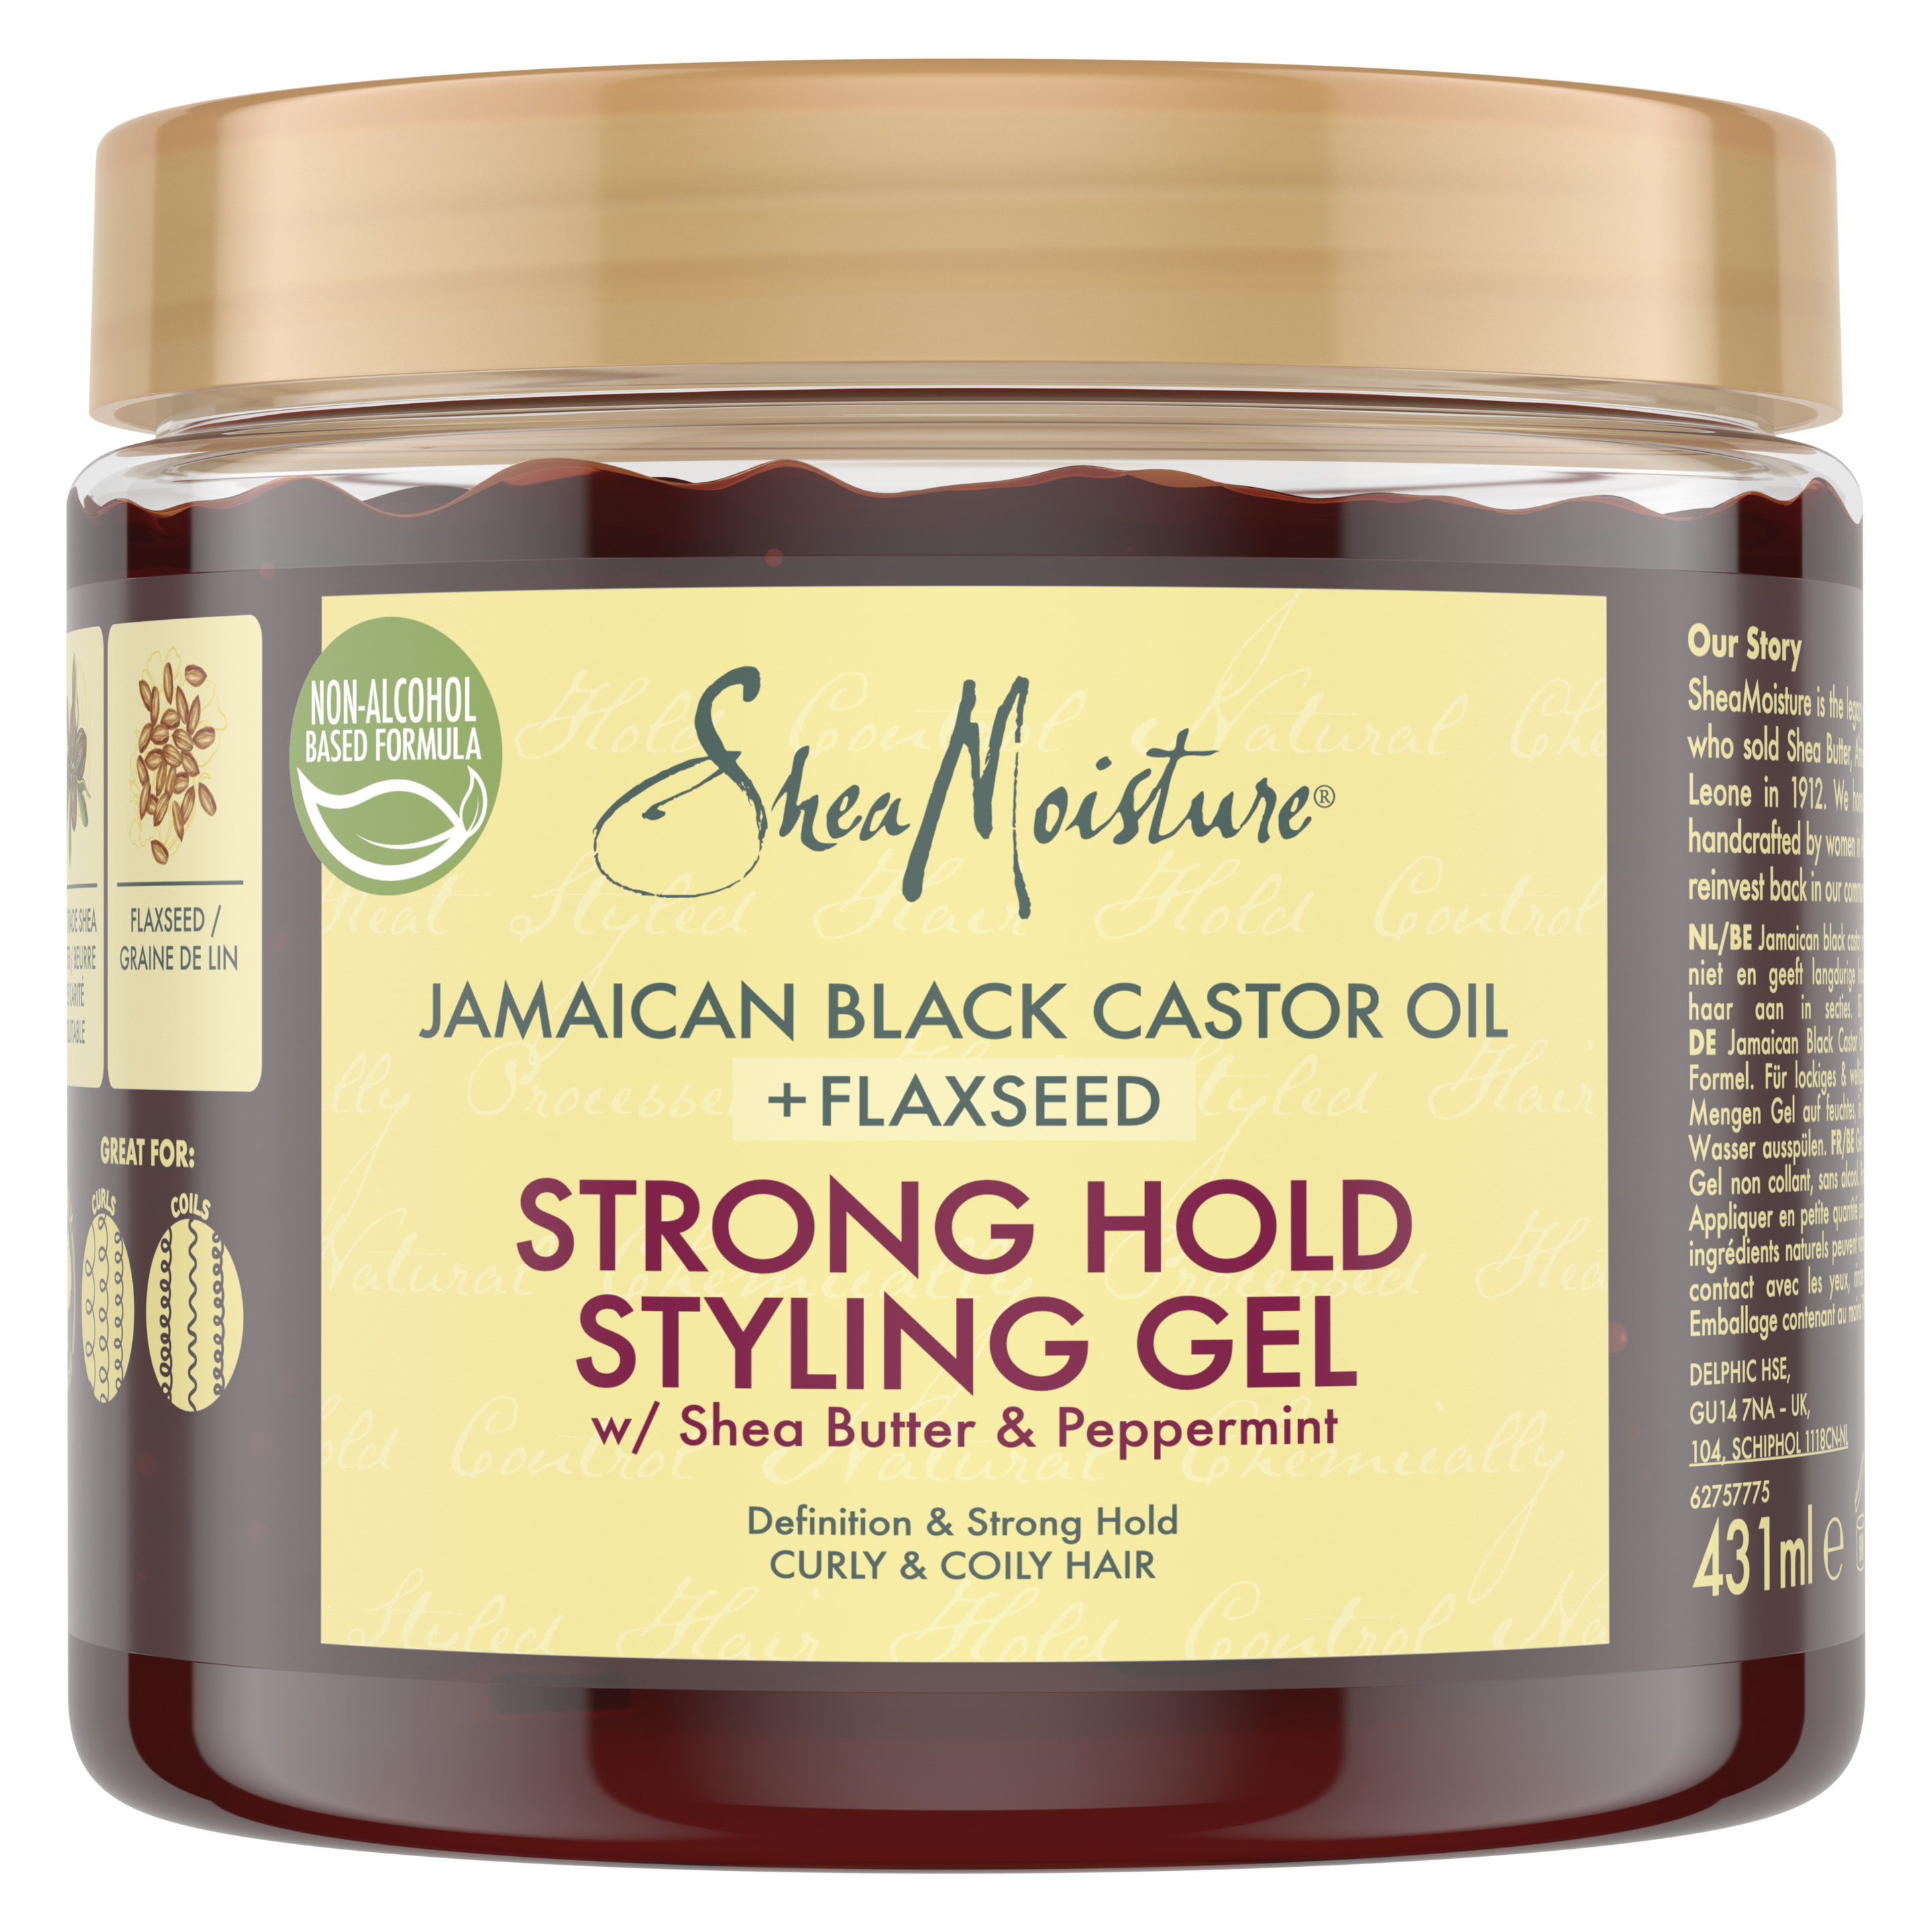 Jamaican Black Castor Oil Strong Hold Styling Gel packshot